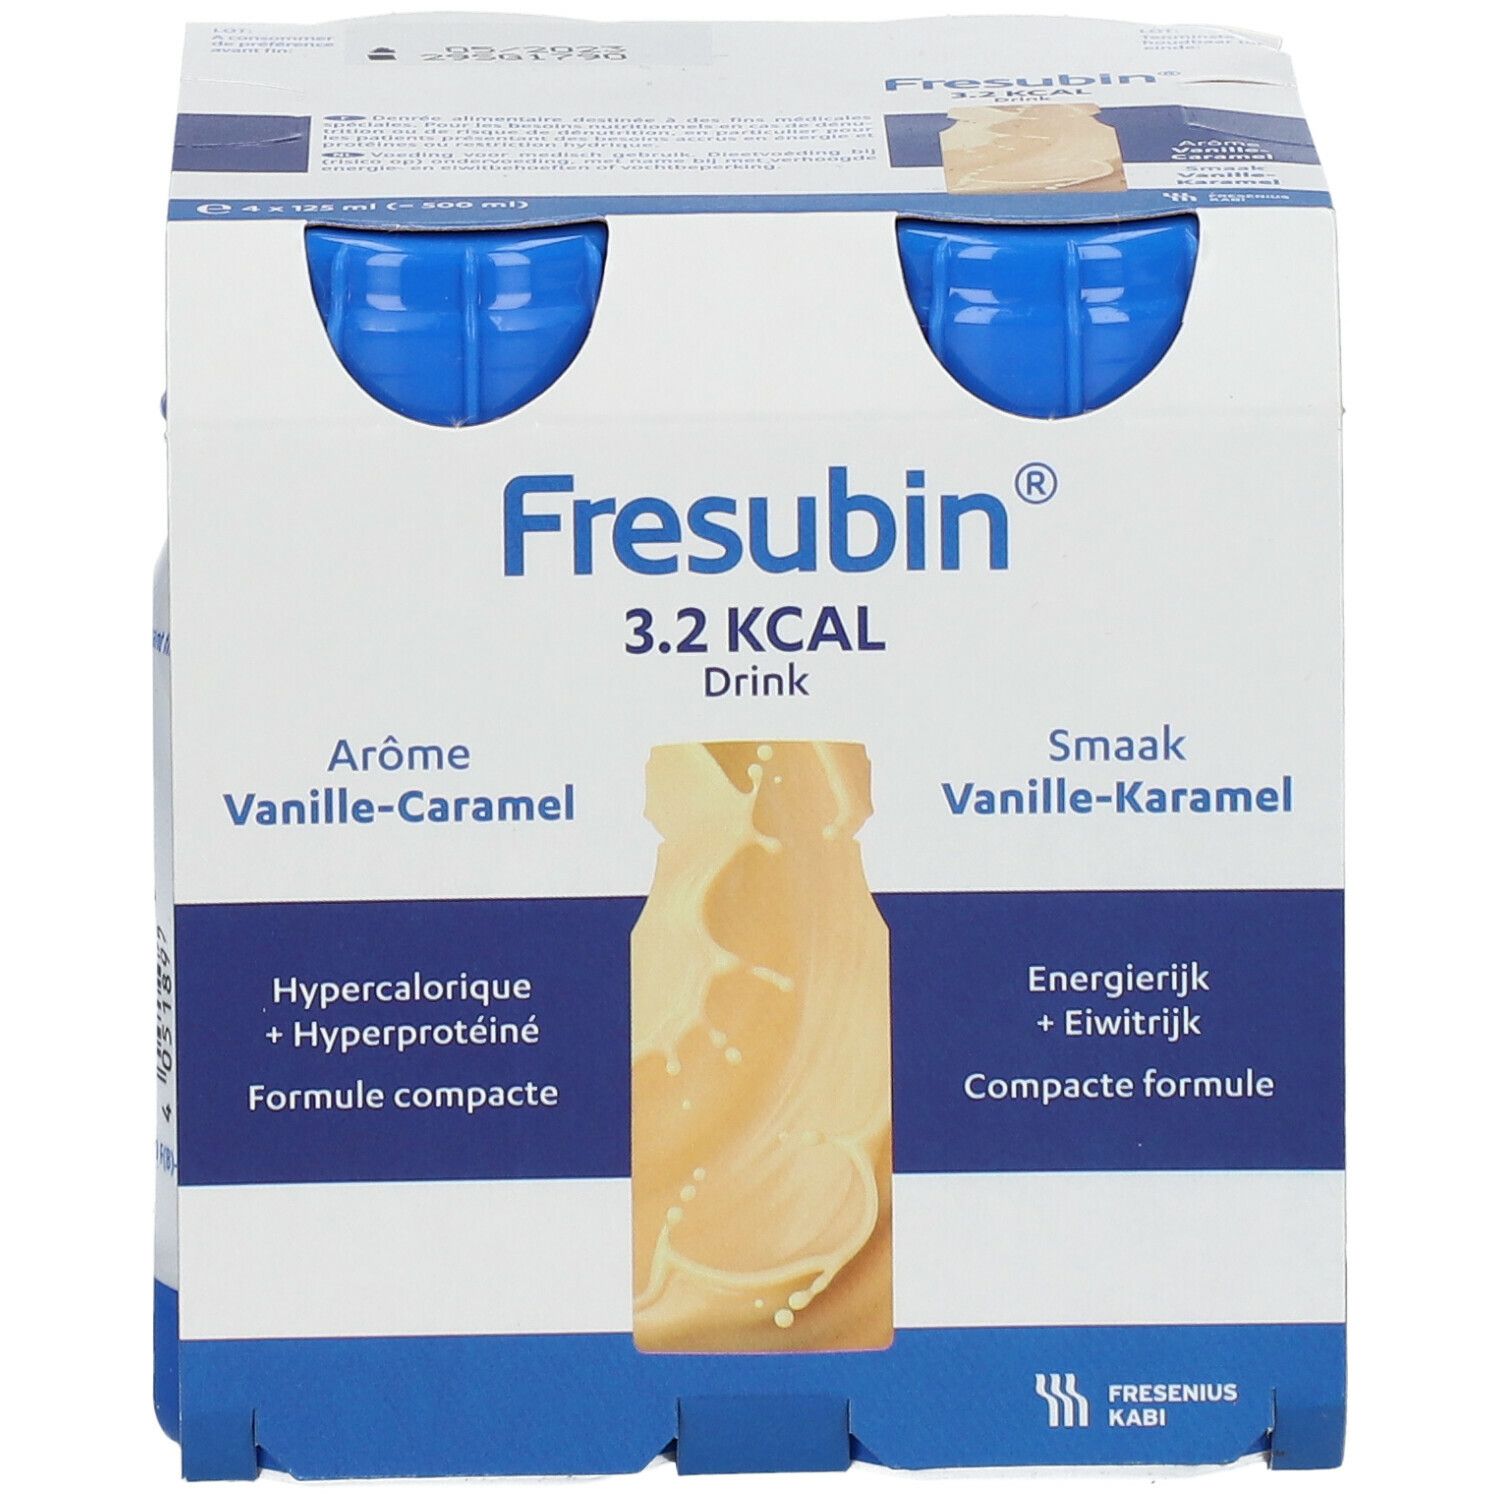 Fresubin® 3.2 kcal Drink Vanille-Caramel